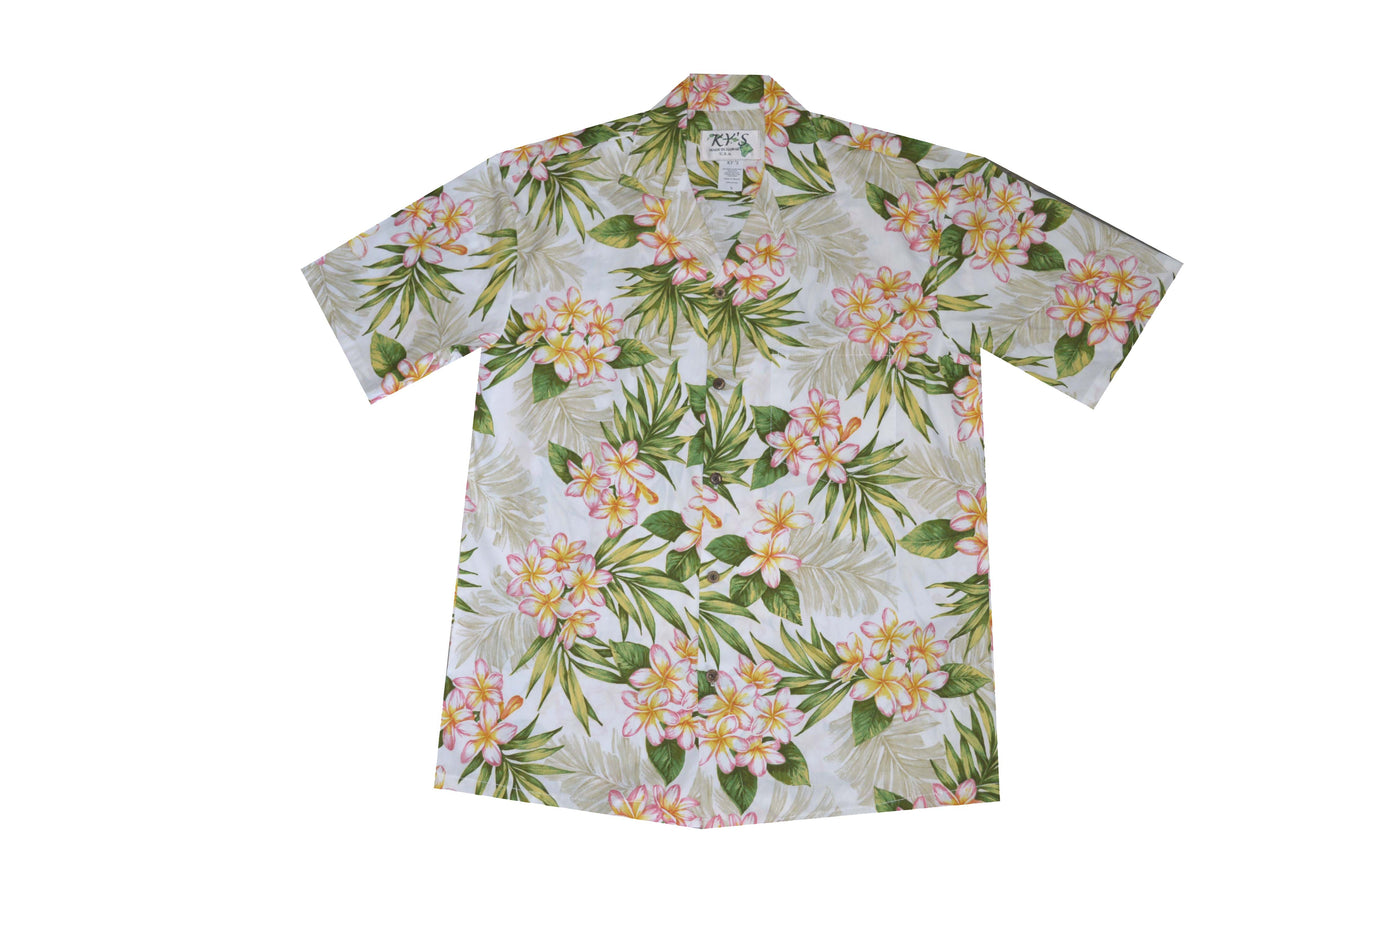 Plumeria Dream Men's Aloha Cotton Shirts